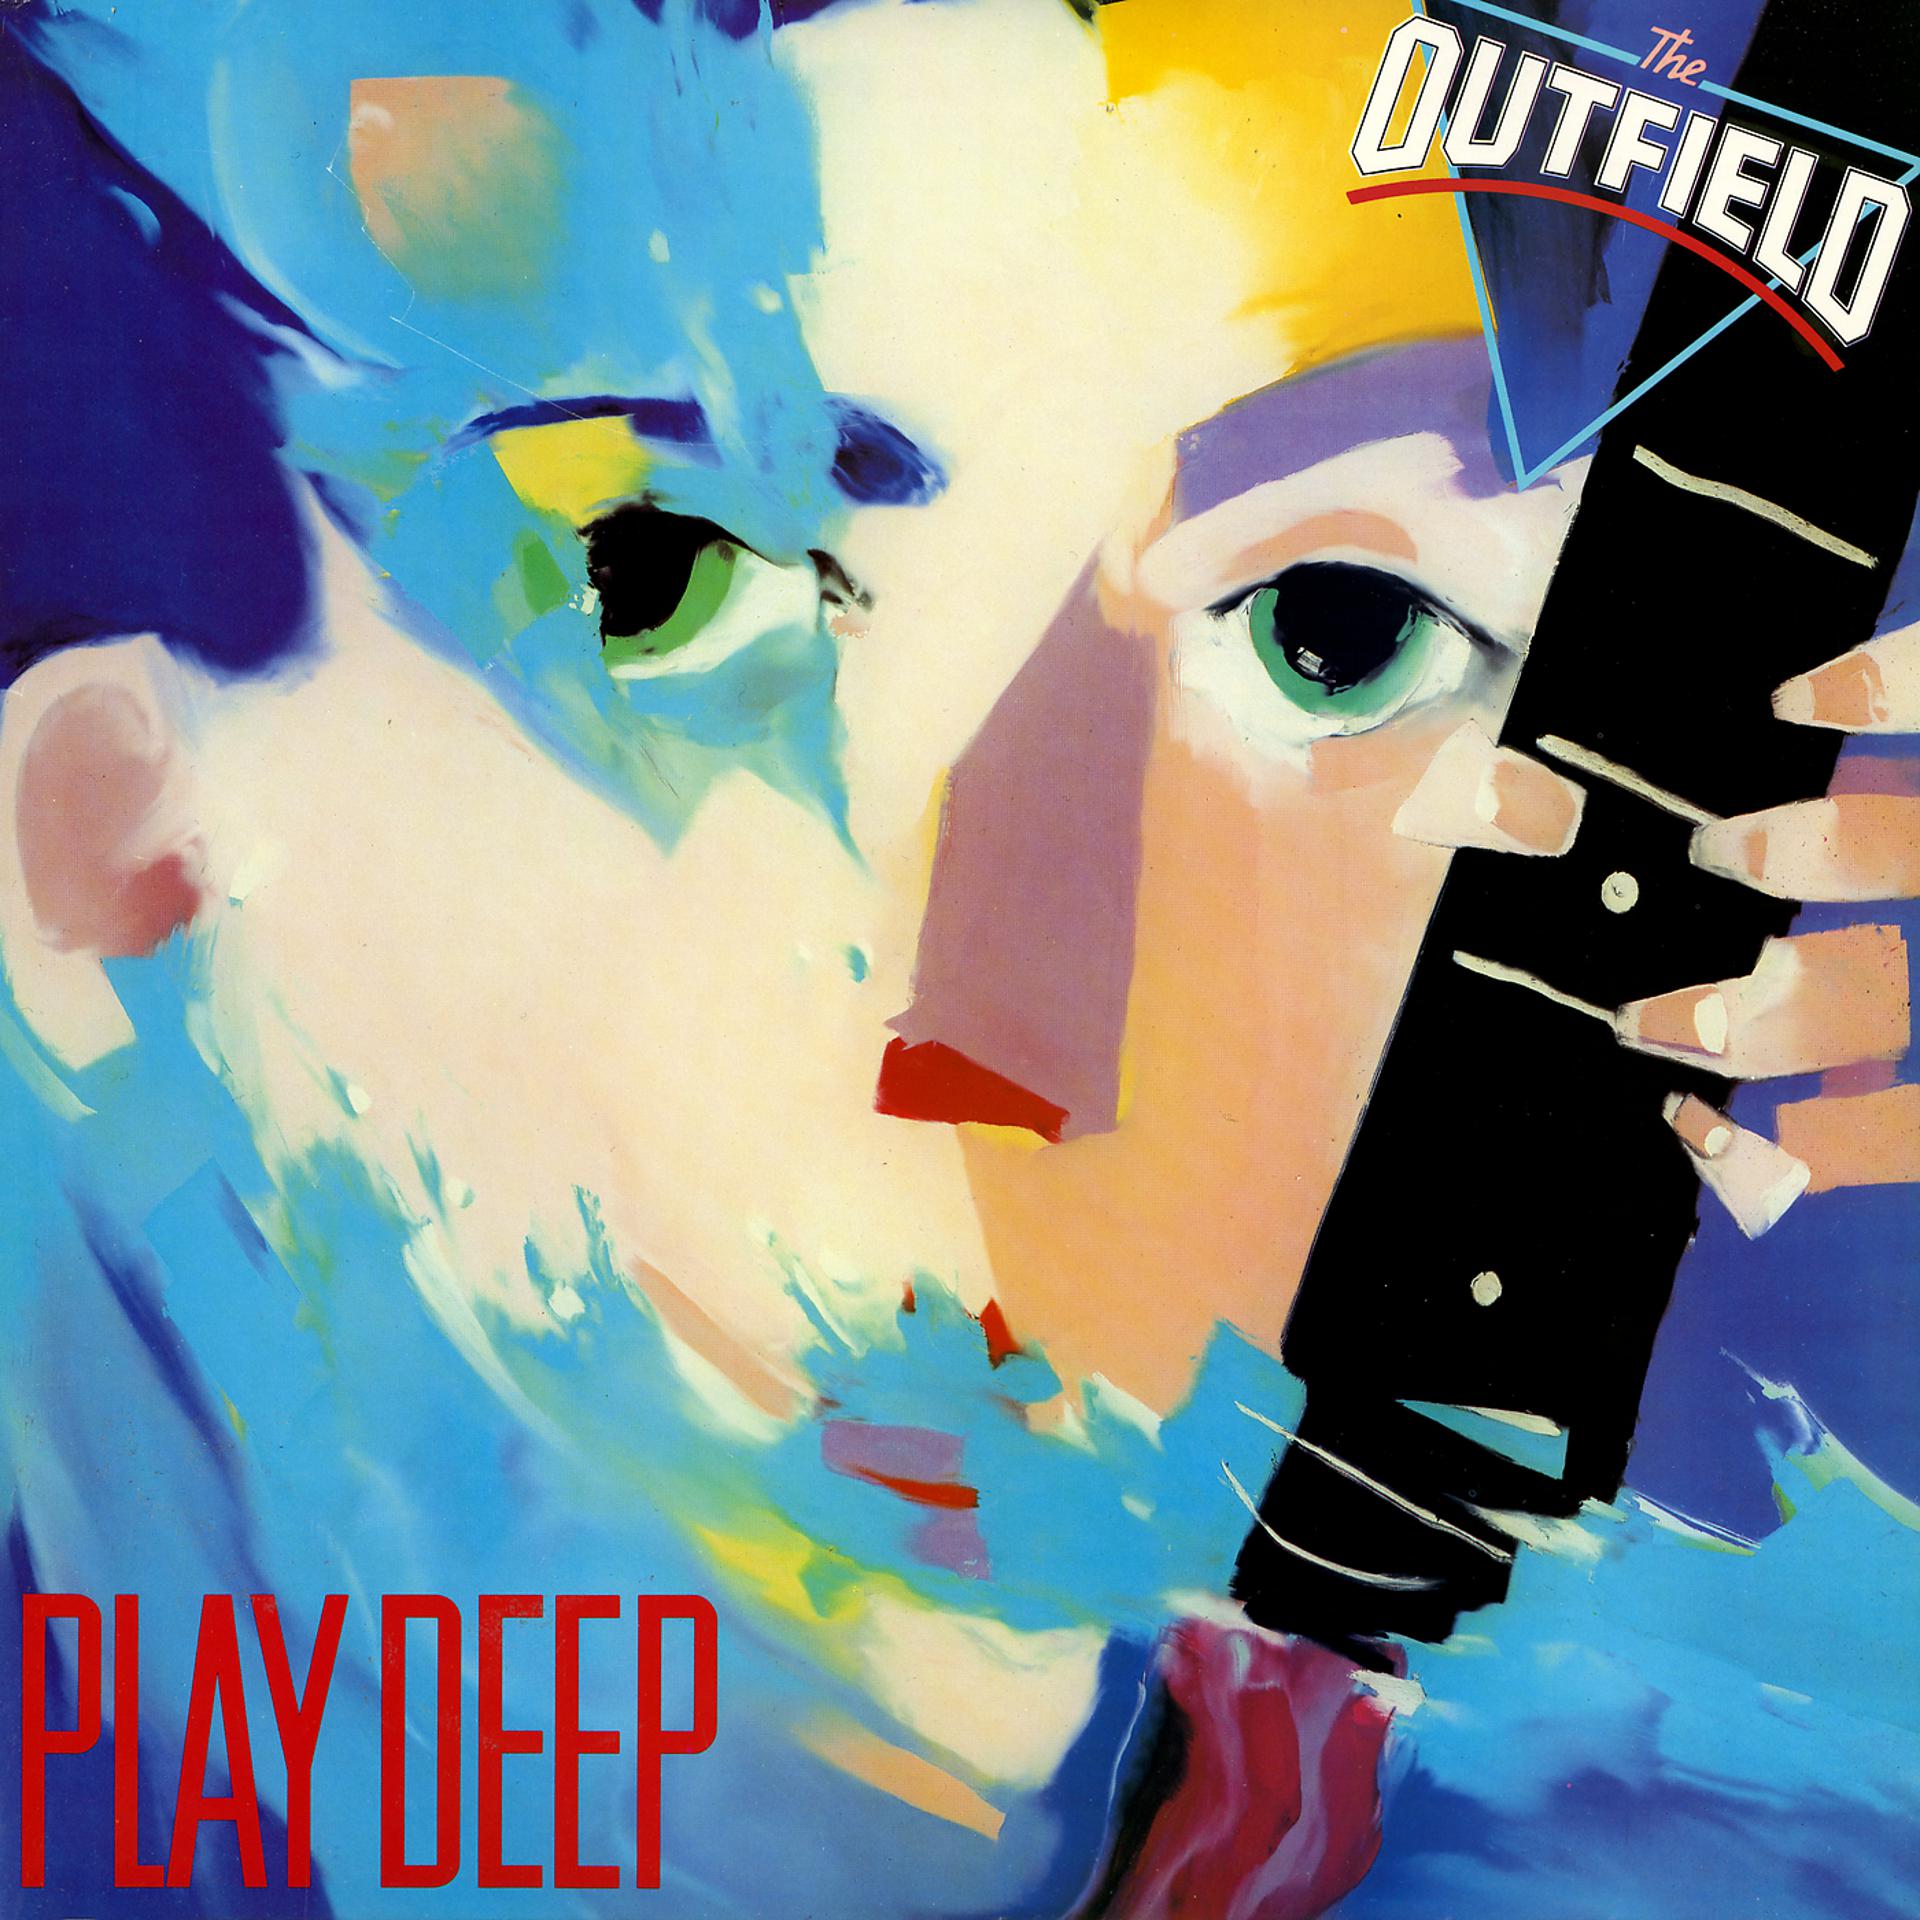 The outfield. The Outfield your Love. The Outfield Play Deep. The Outfield - 1985 - Play Deep. Обложки альбомов.